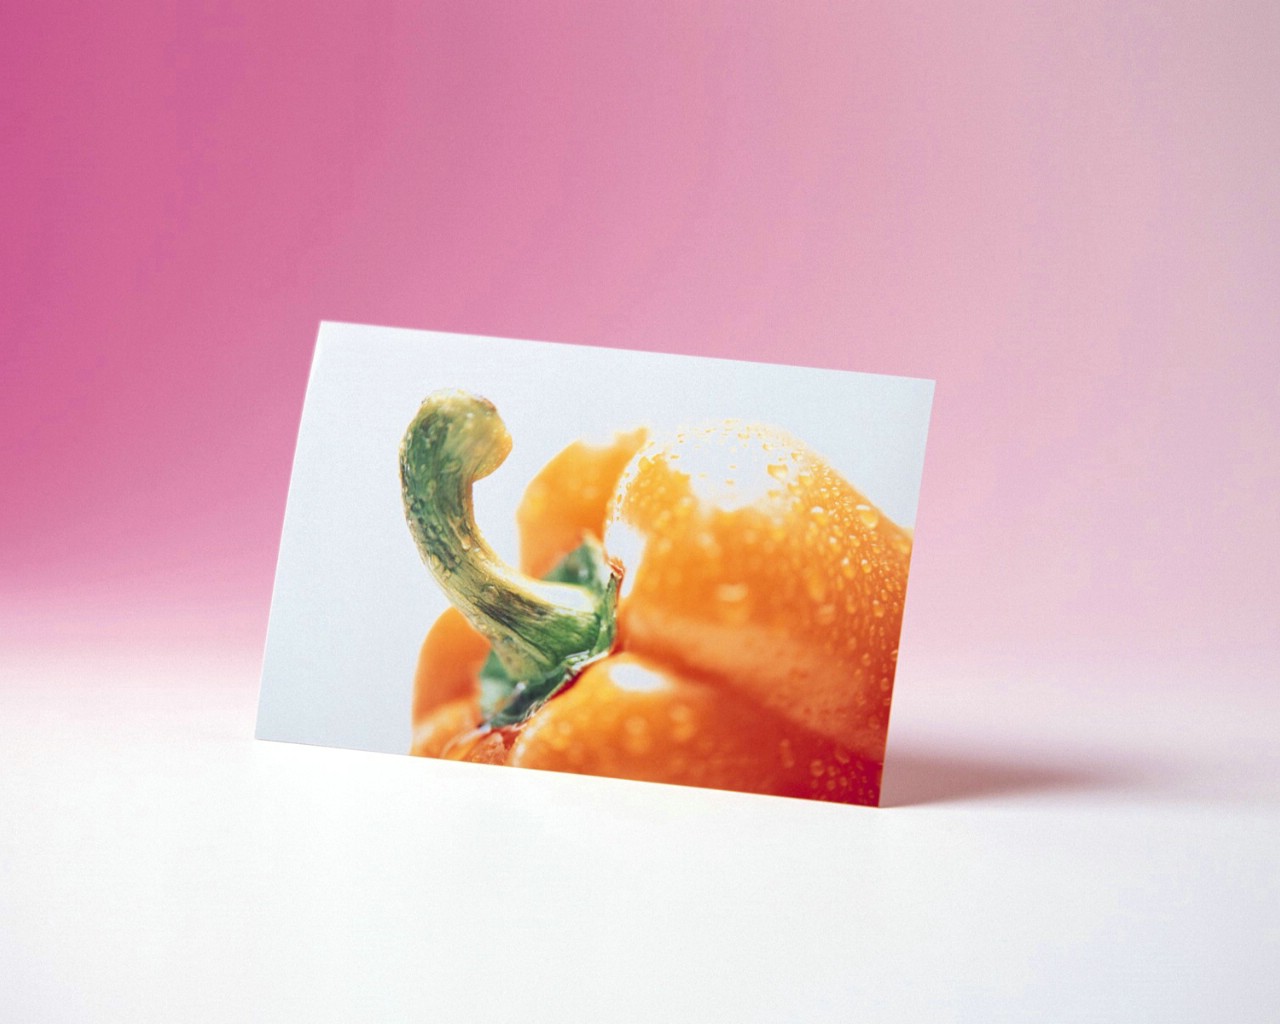 壁纸1280x1024 PS相片风格蔬果壁纸壁纸 精致水果蔬菜摄影壁纸壁纸 精致水果蔬菜摄影壁纸图片 精致水果蔬菜摄影壁纸素材 摄影壁纸 摄影图库 摄影图片素材桌面壁纸